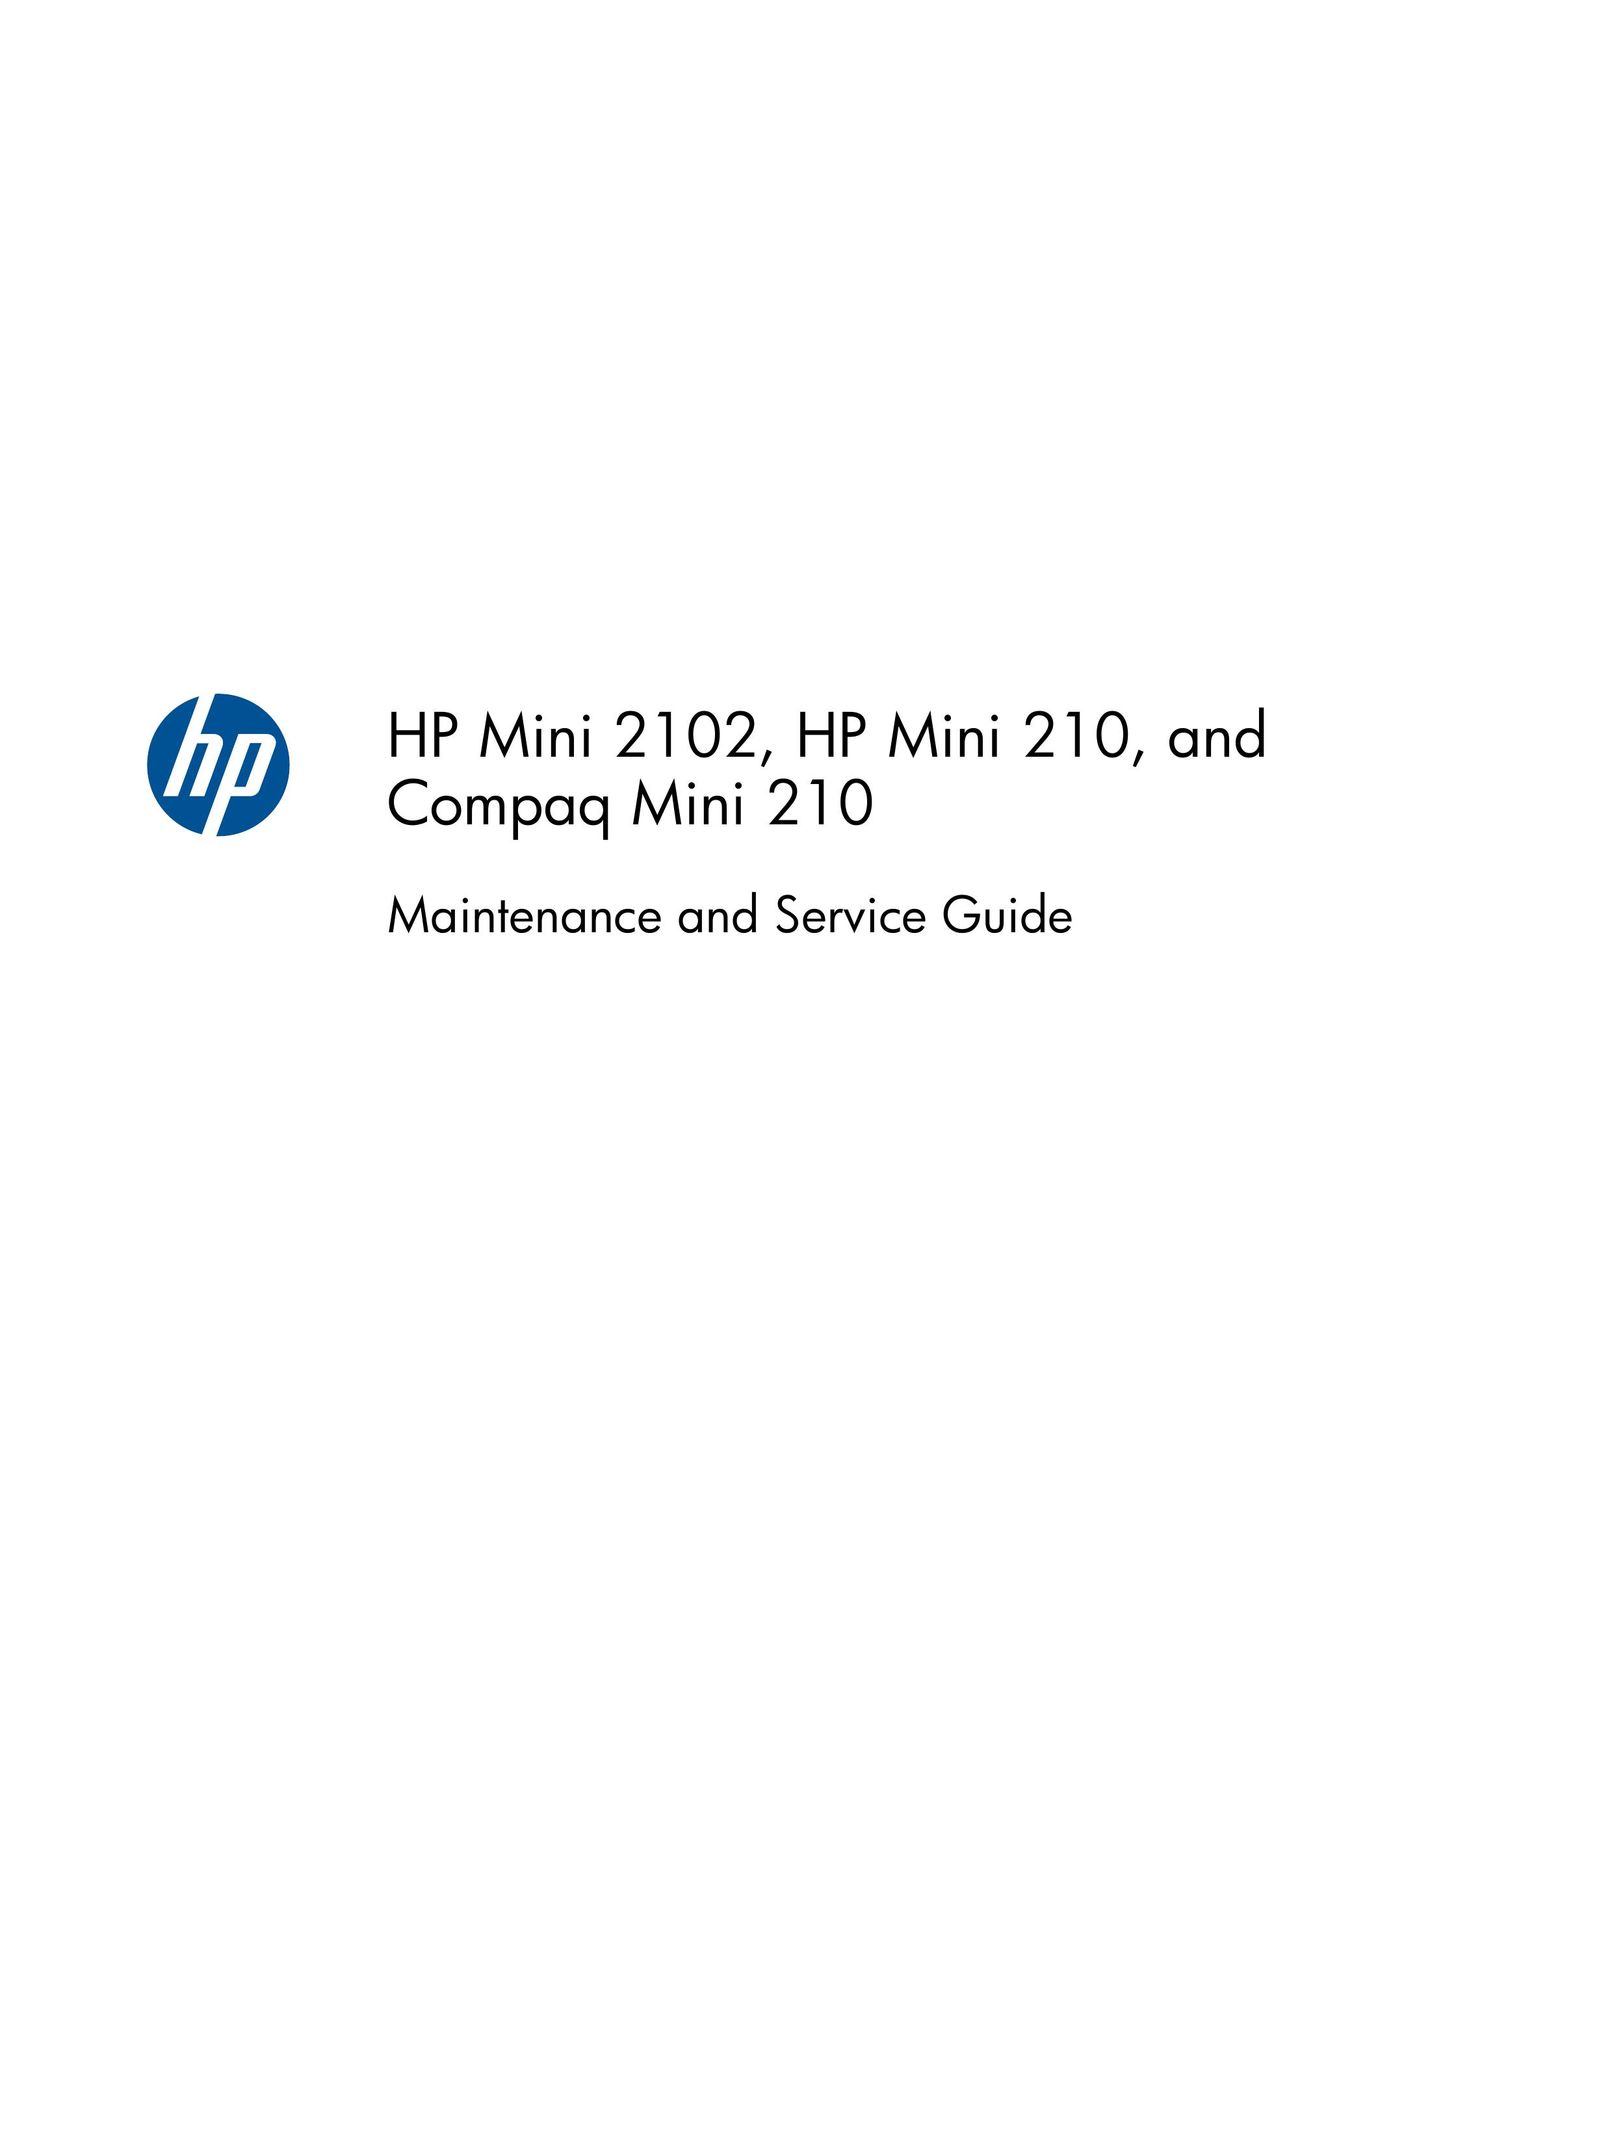 HP (Hewlett-Packard) 2102 Laptop User Manual